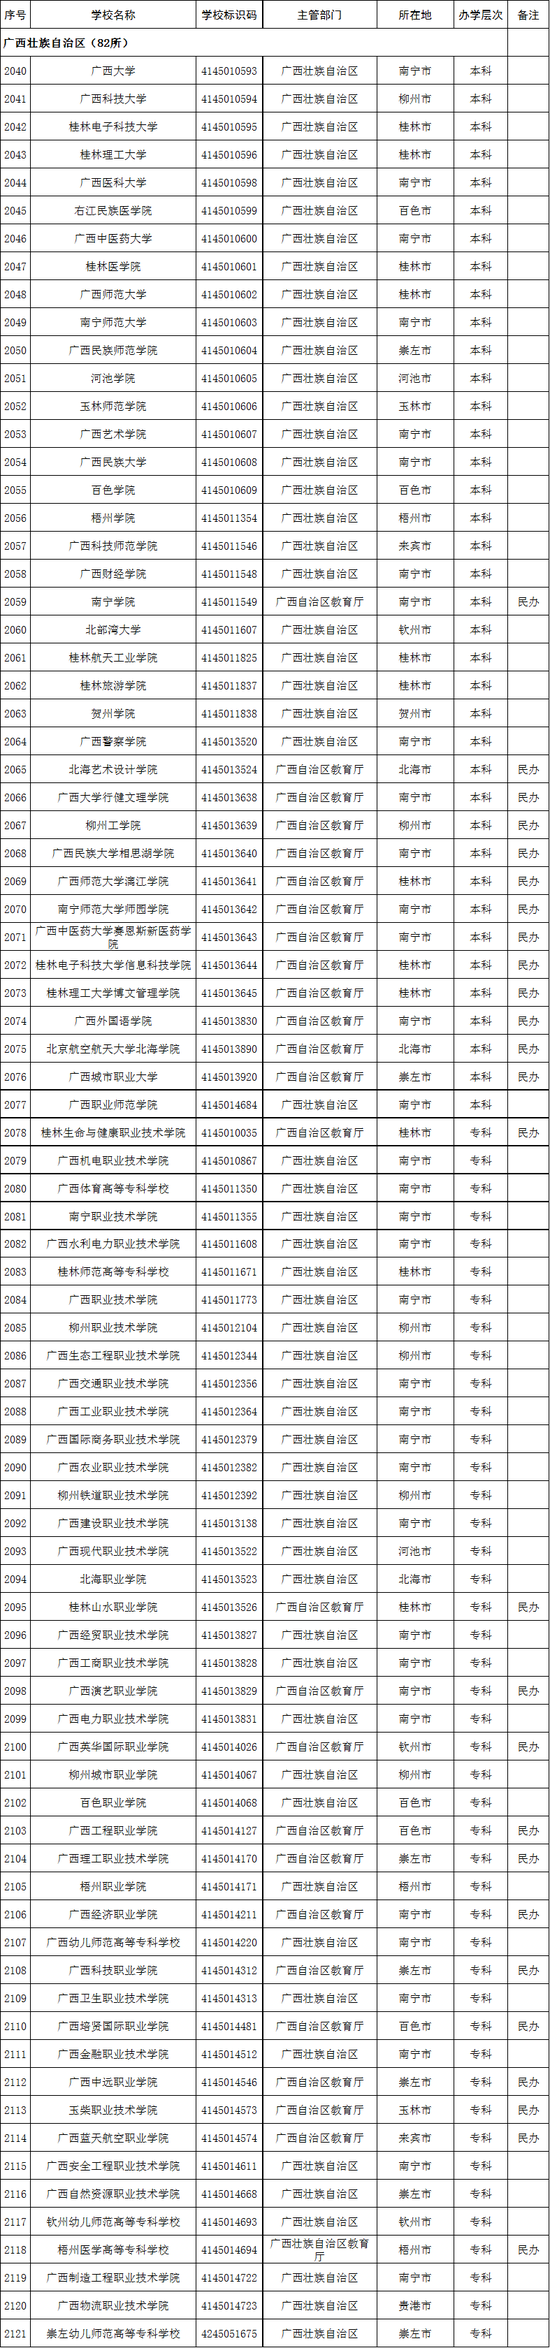 广西壮族自治区82所高校名单